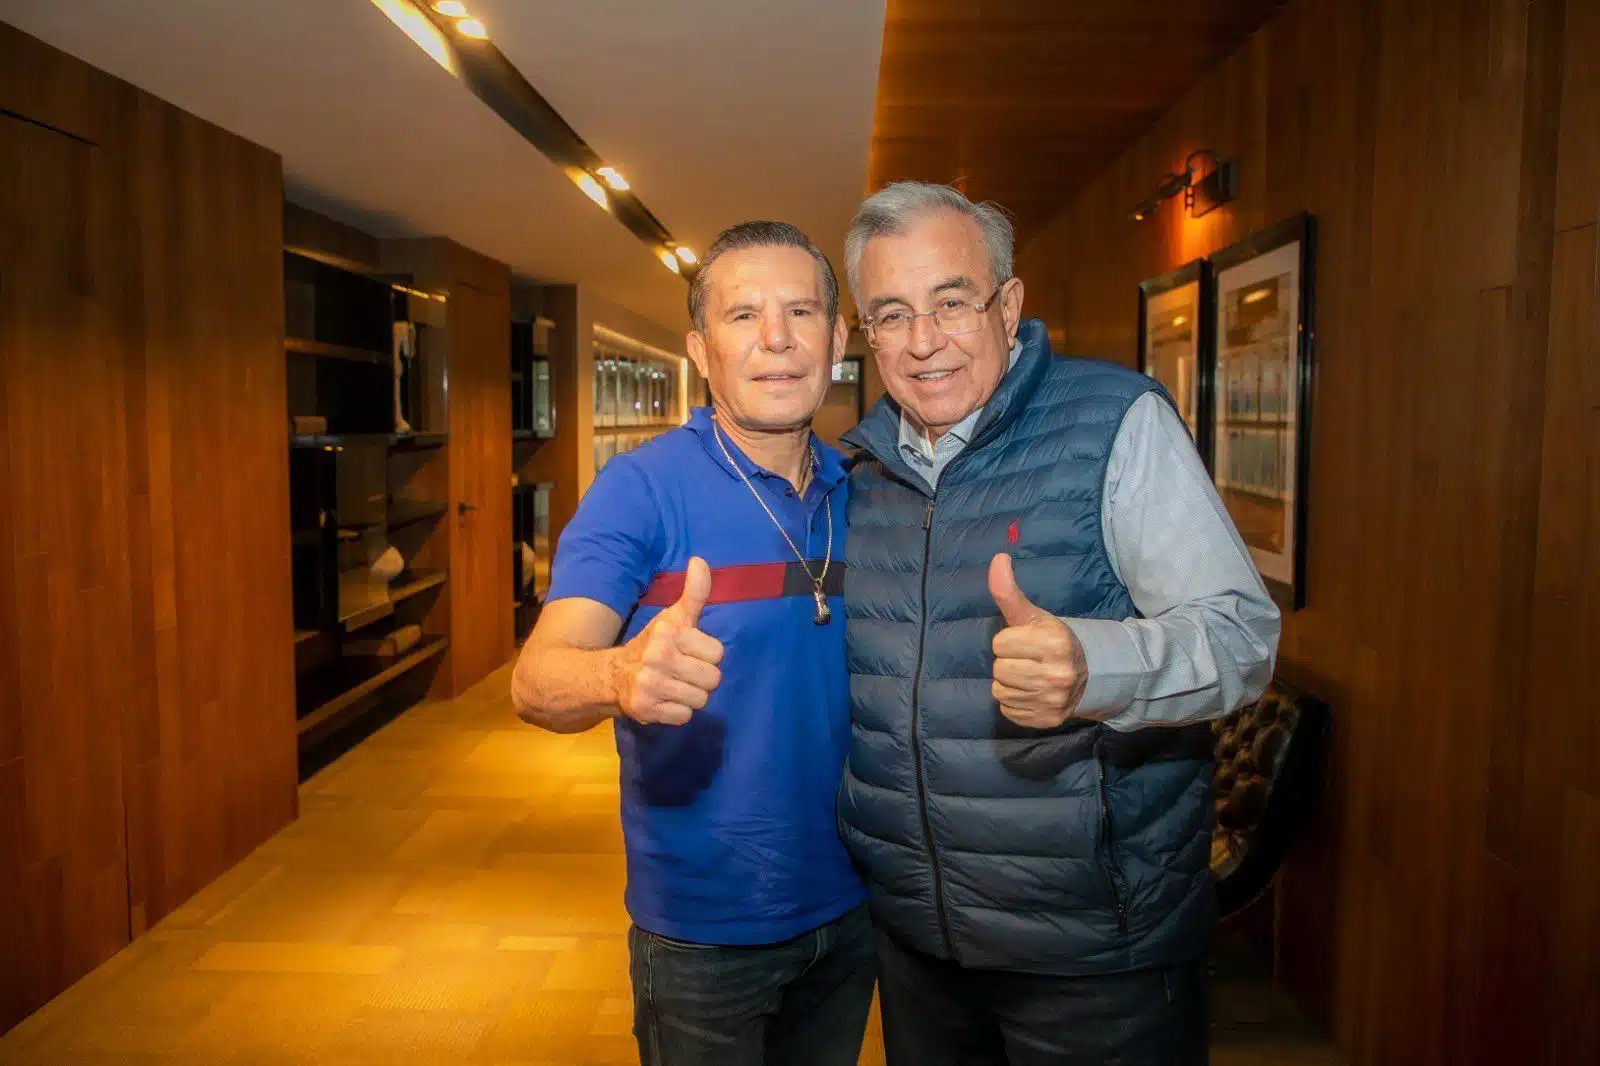 “Siempre es un gusto recibir al gran campeón”: Se reúne Rocha Moya con Julio César Chávez